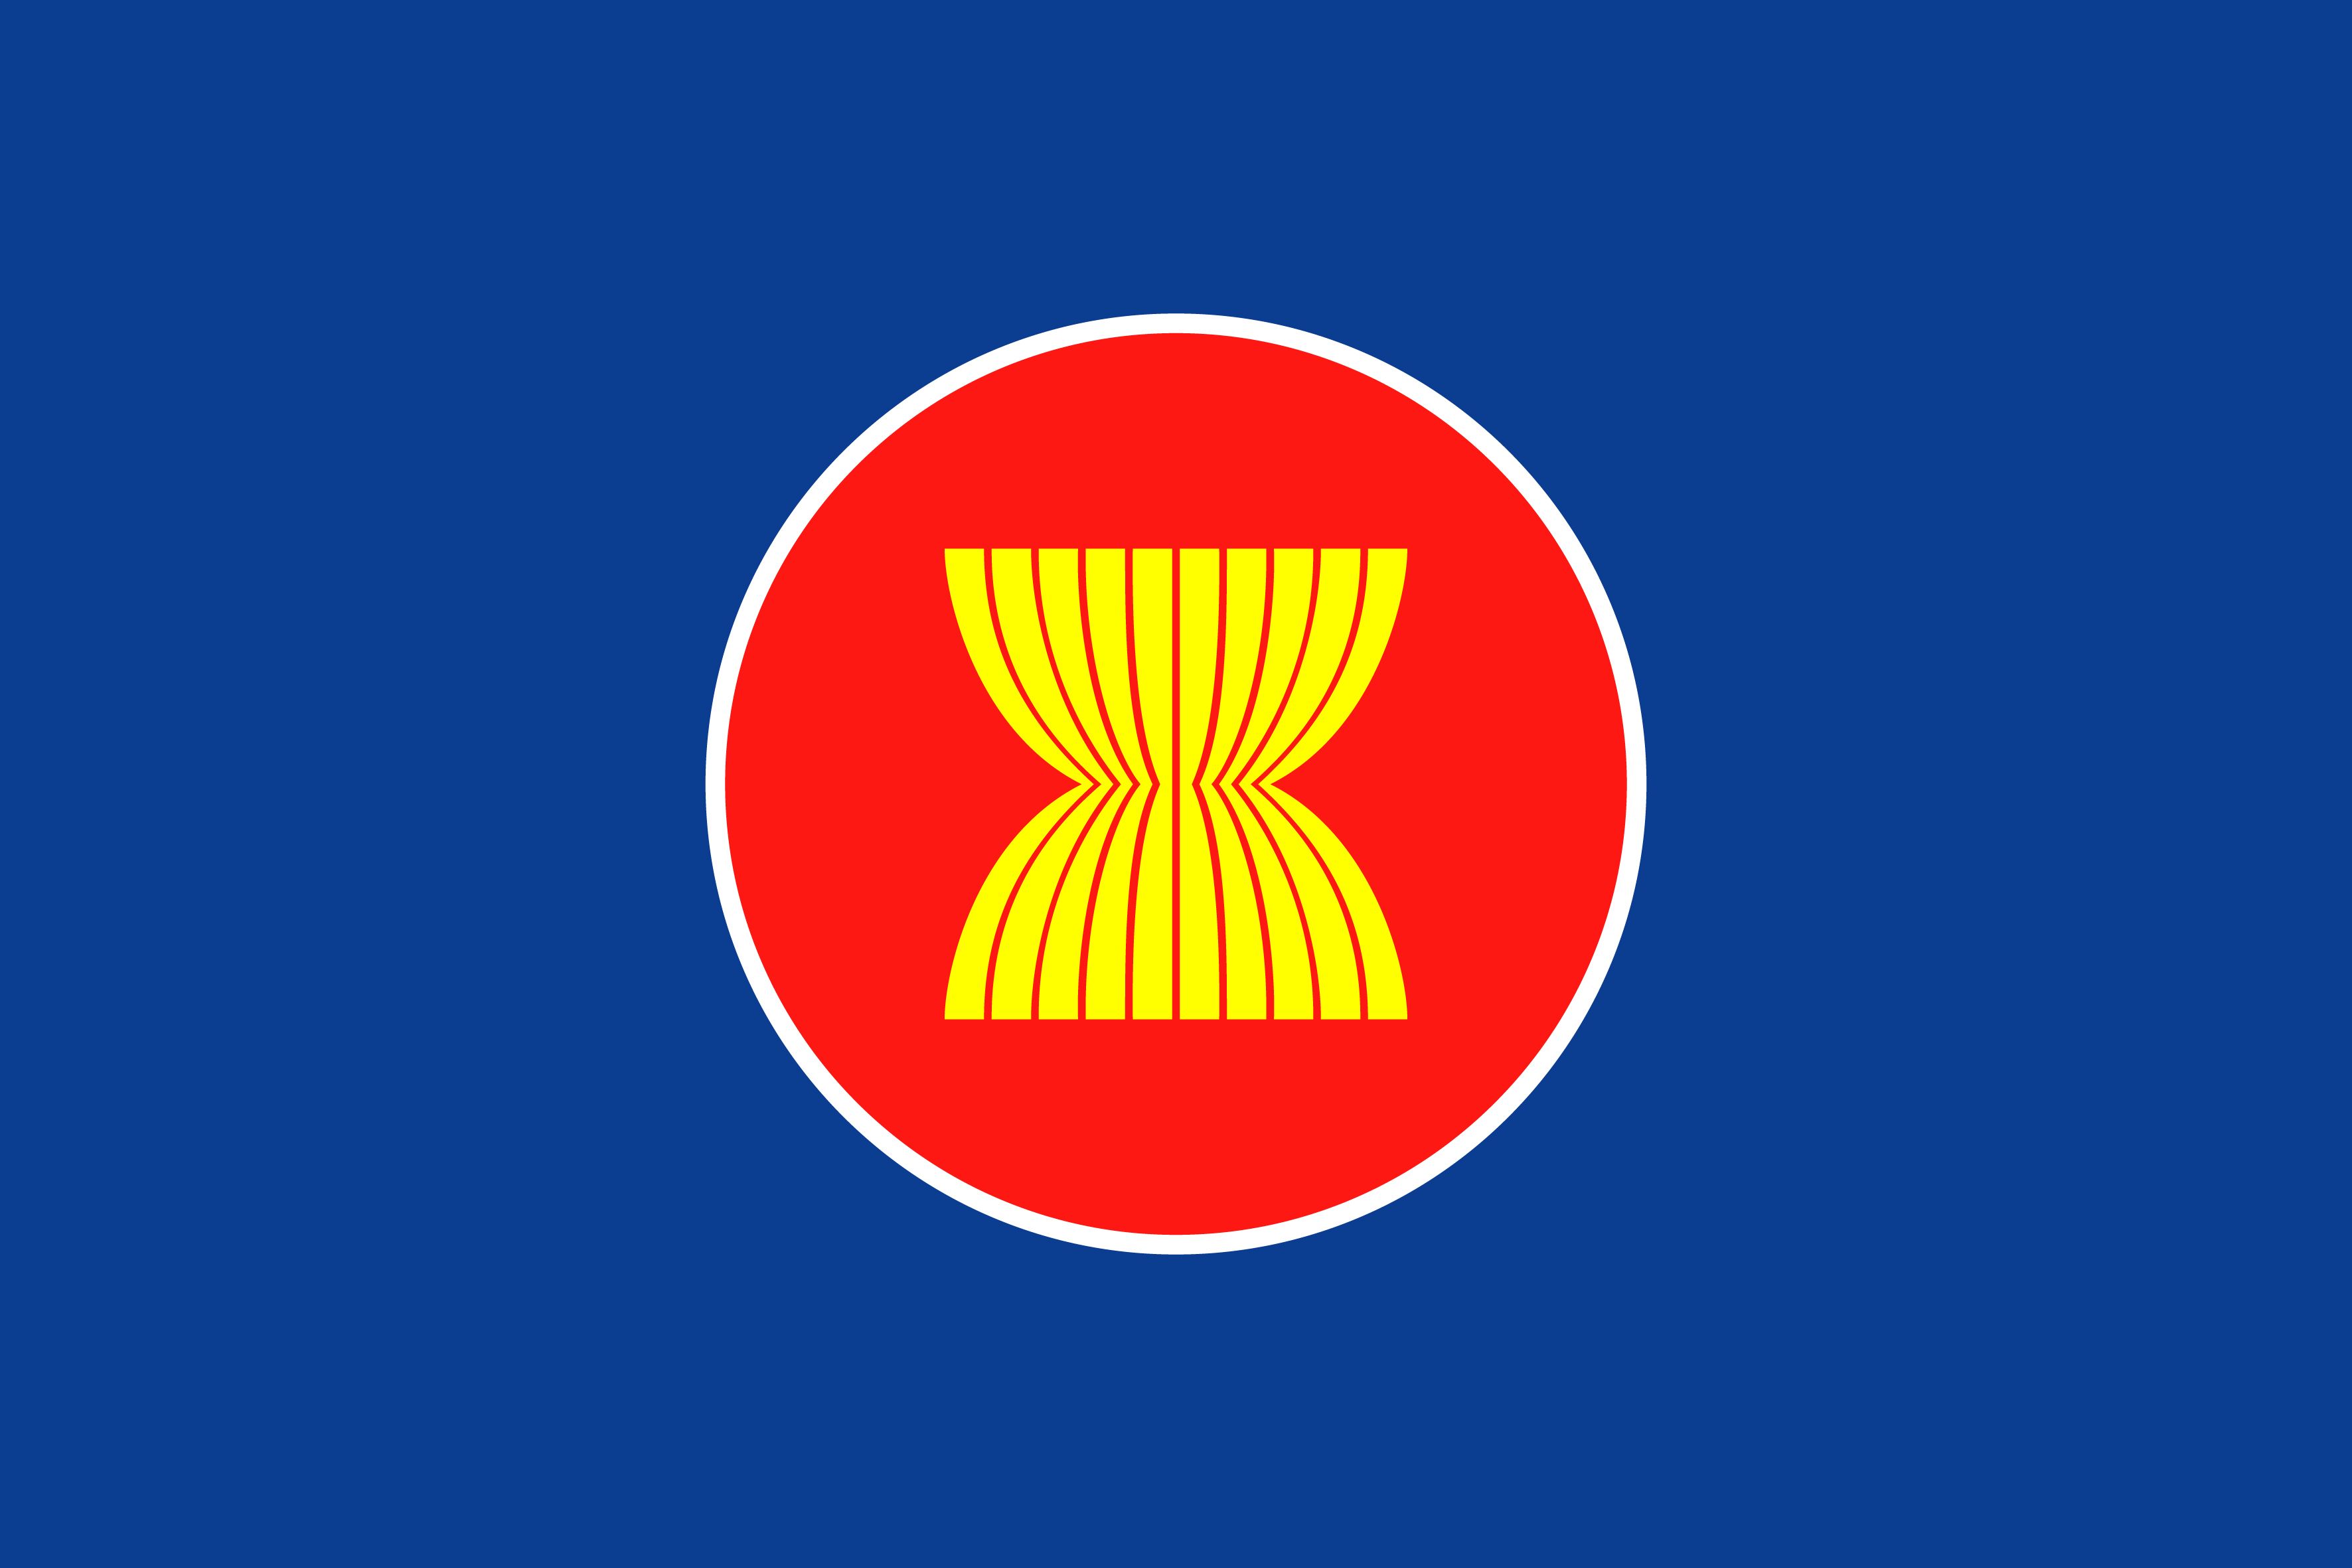 Cờ ASEAN 2024 là biểu tượng cho sự đoàn kết và hợp tác của các quốc gia trong khu vực. Với việc tổ chức SEA Games và các sự kiện quan trọng khác, cờ ASEAN sẽ được vinh danh và truyền tải thông điệp tương hỗ giữa các thành viên. Cùng đón chào cờ ASEAN 2024 và khám phá thêm sự đa dạng và sức mạnh của khu vực này!